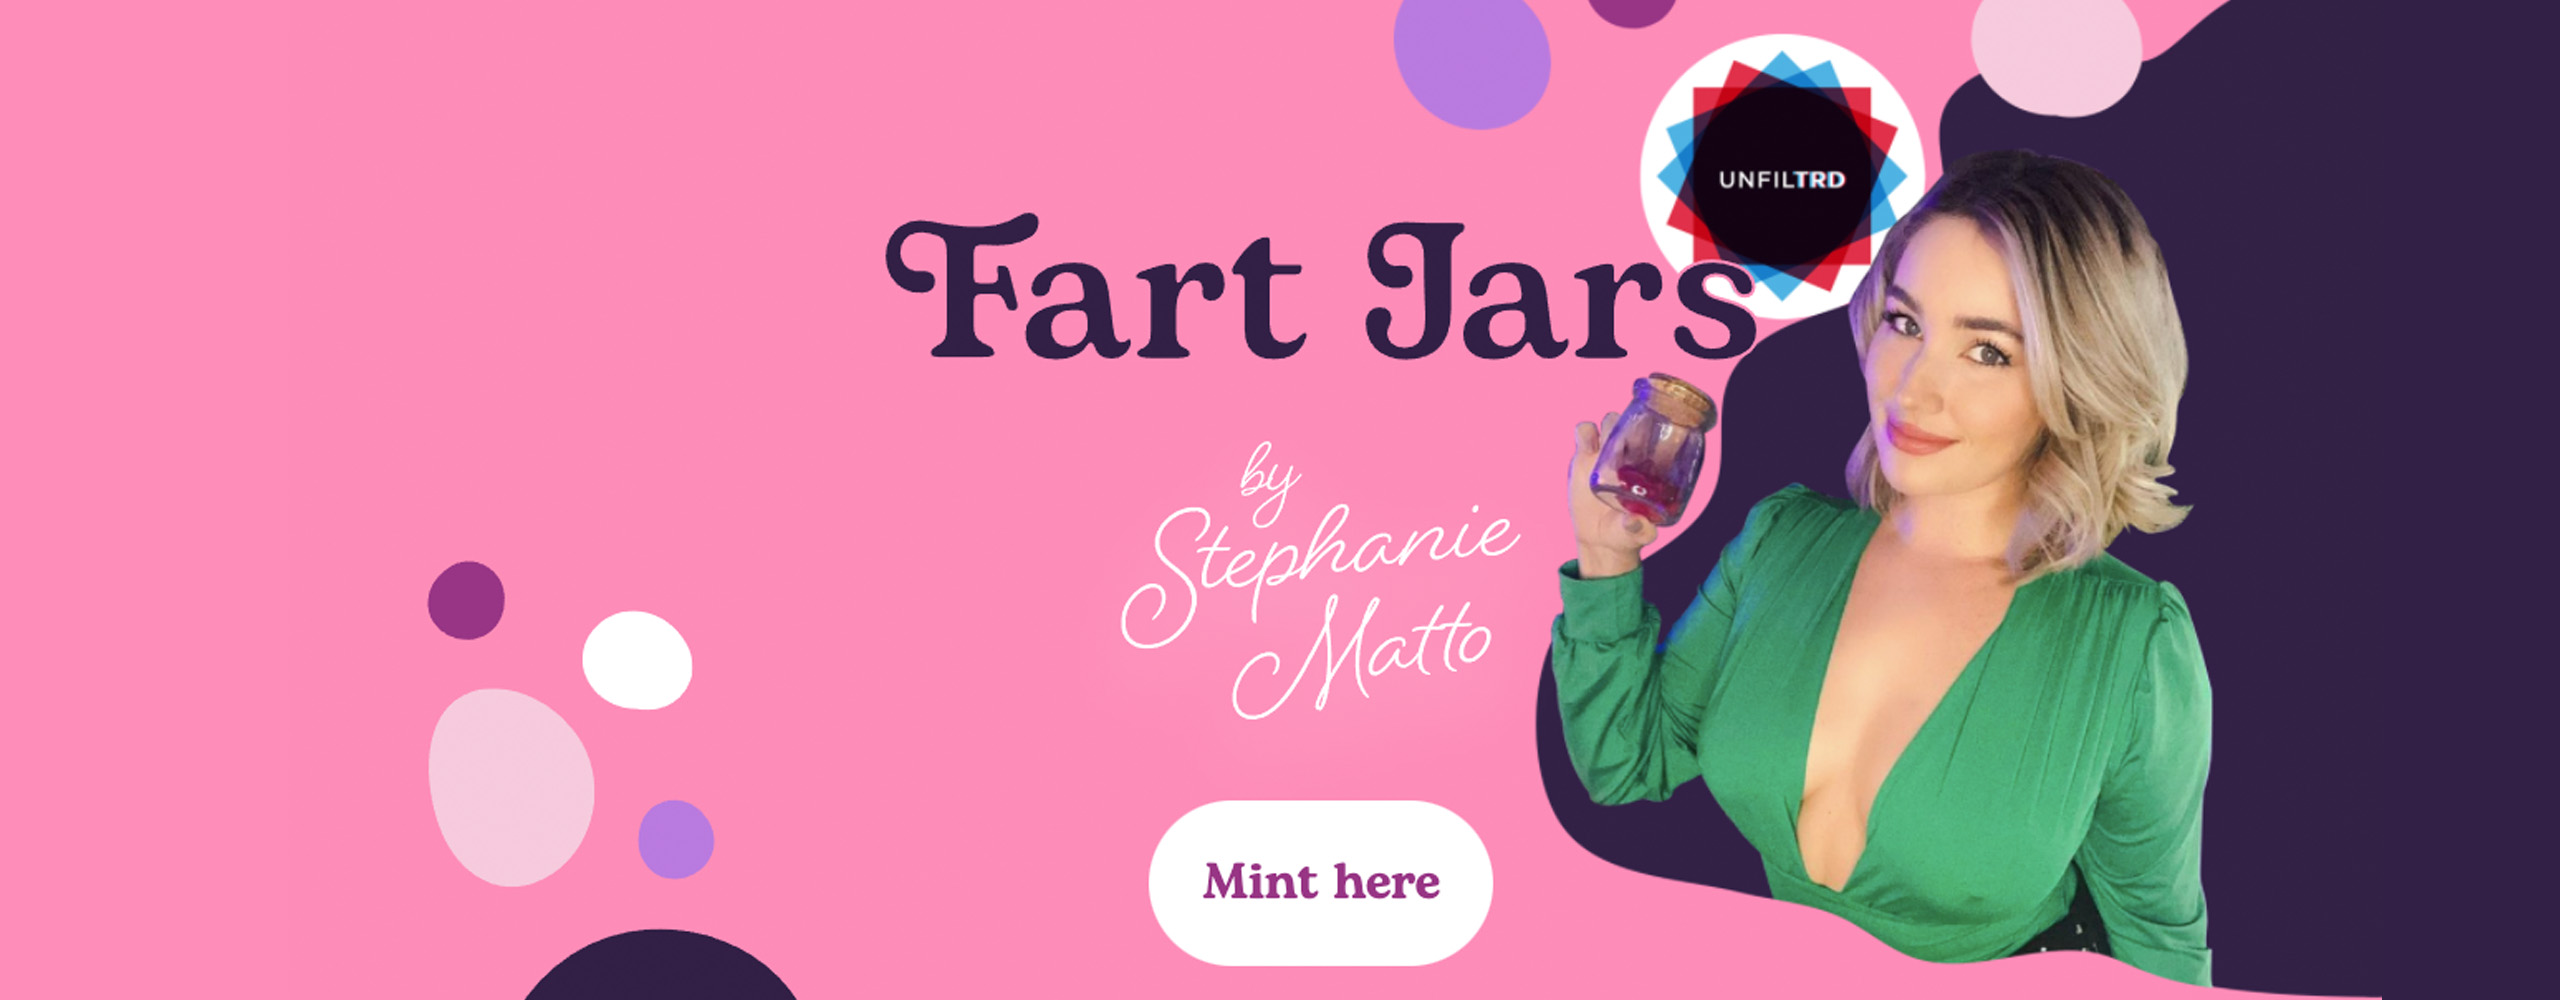 Fart Jars es la colección de NFT de la influencer Stephanie Matto.